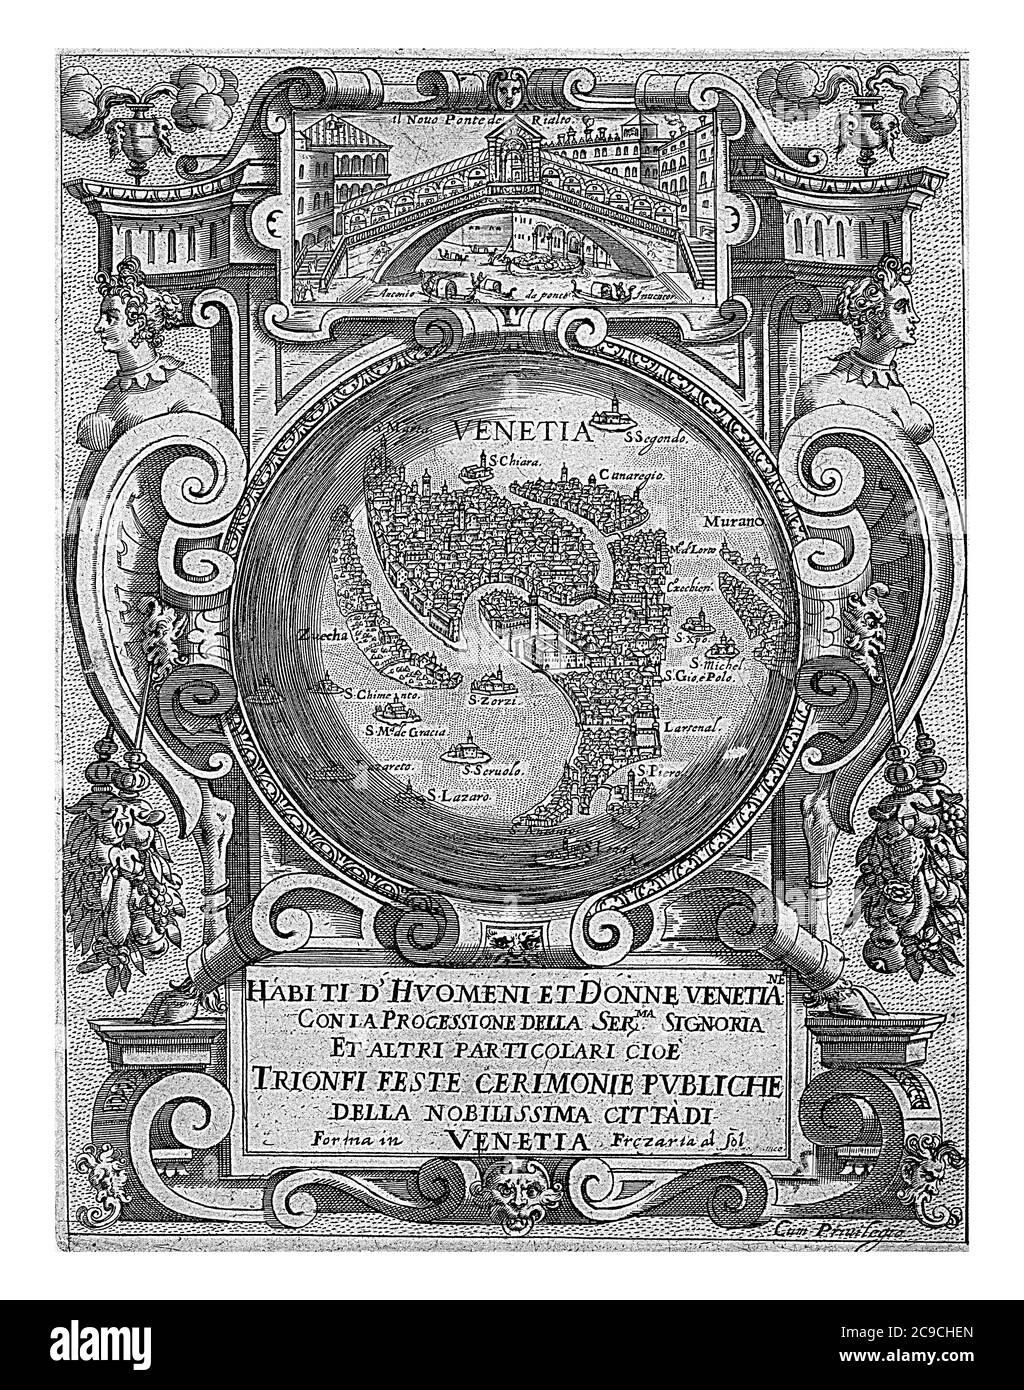 Titeldruck mit der Rialtobrücke in Venedig, einer Karte von Venedig und dem Titel, zusammengefasst in einem ornamentierten Rahmen, Vintage-Gravur. Stockfoto